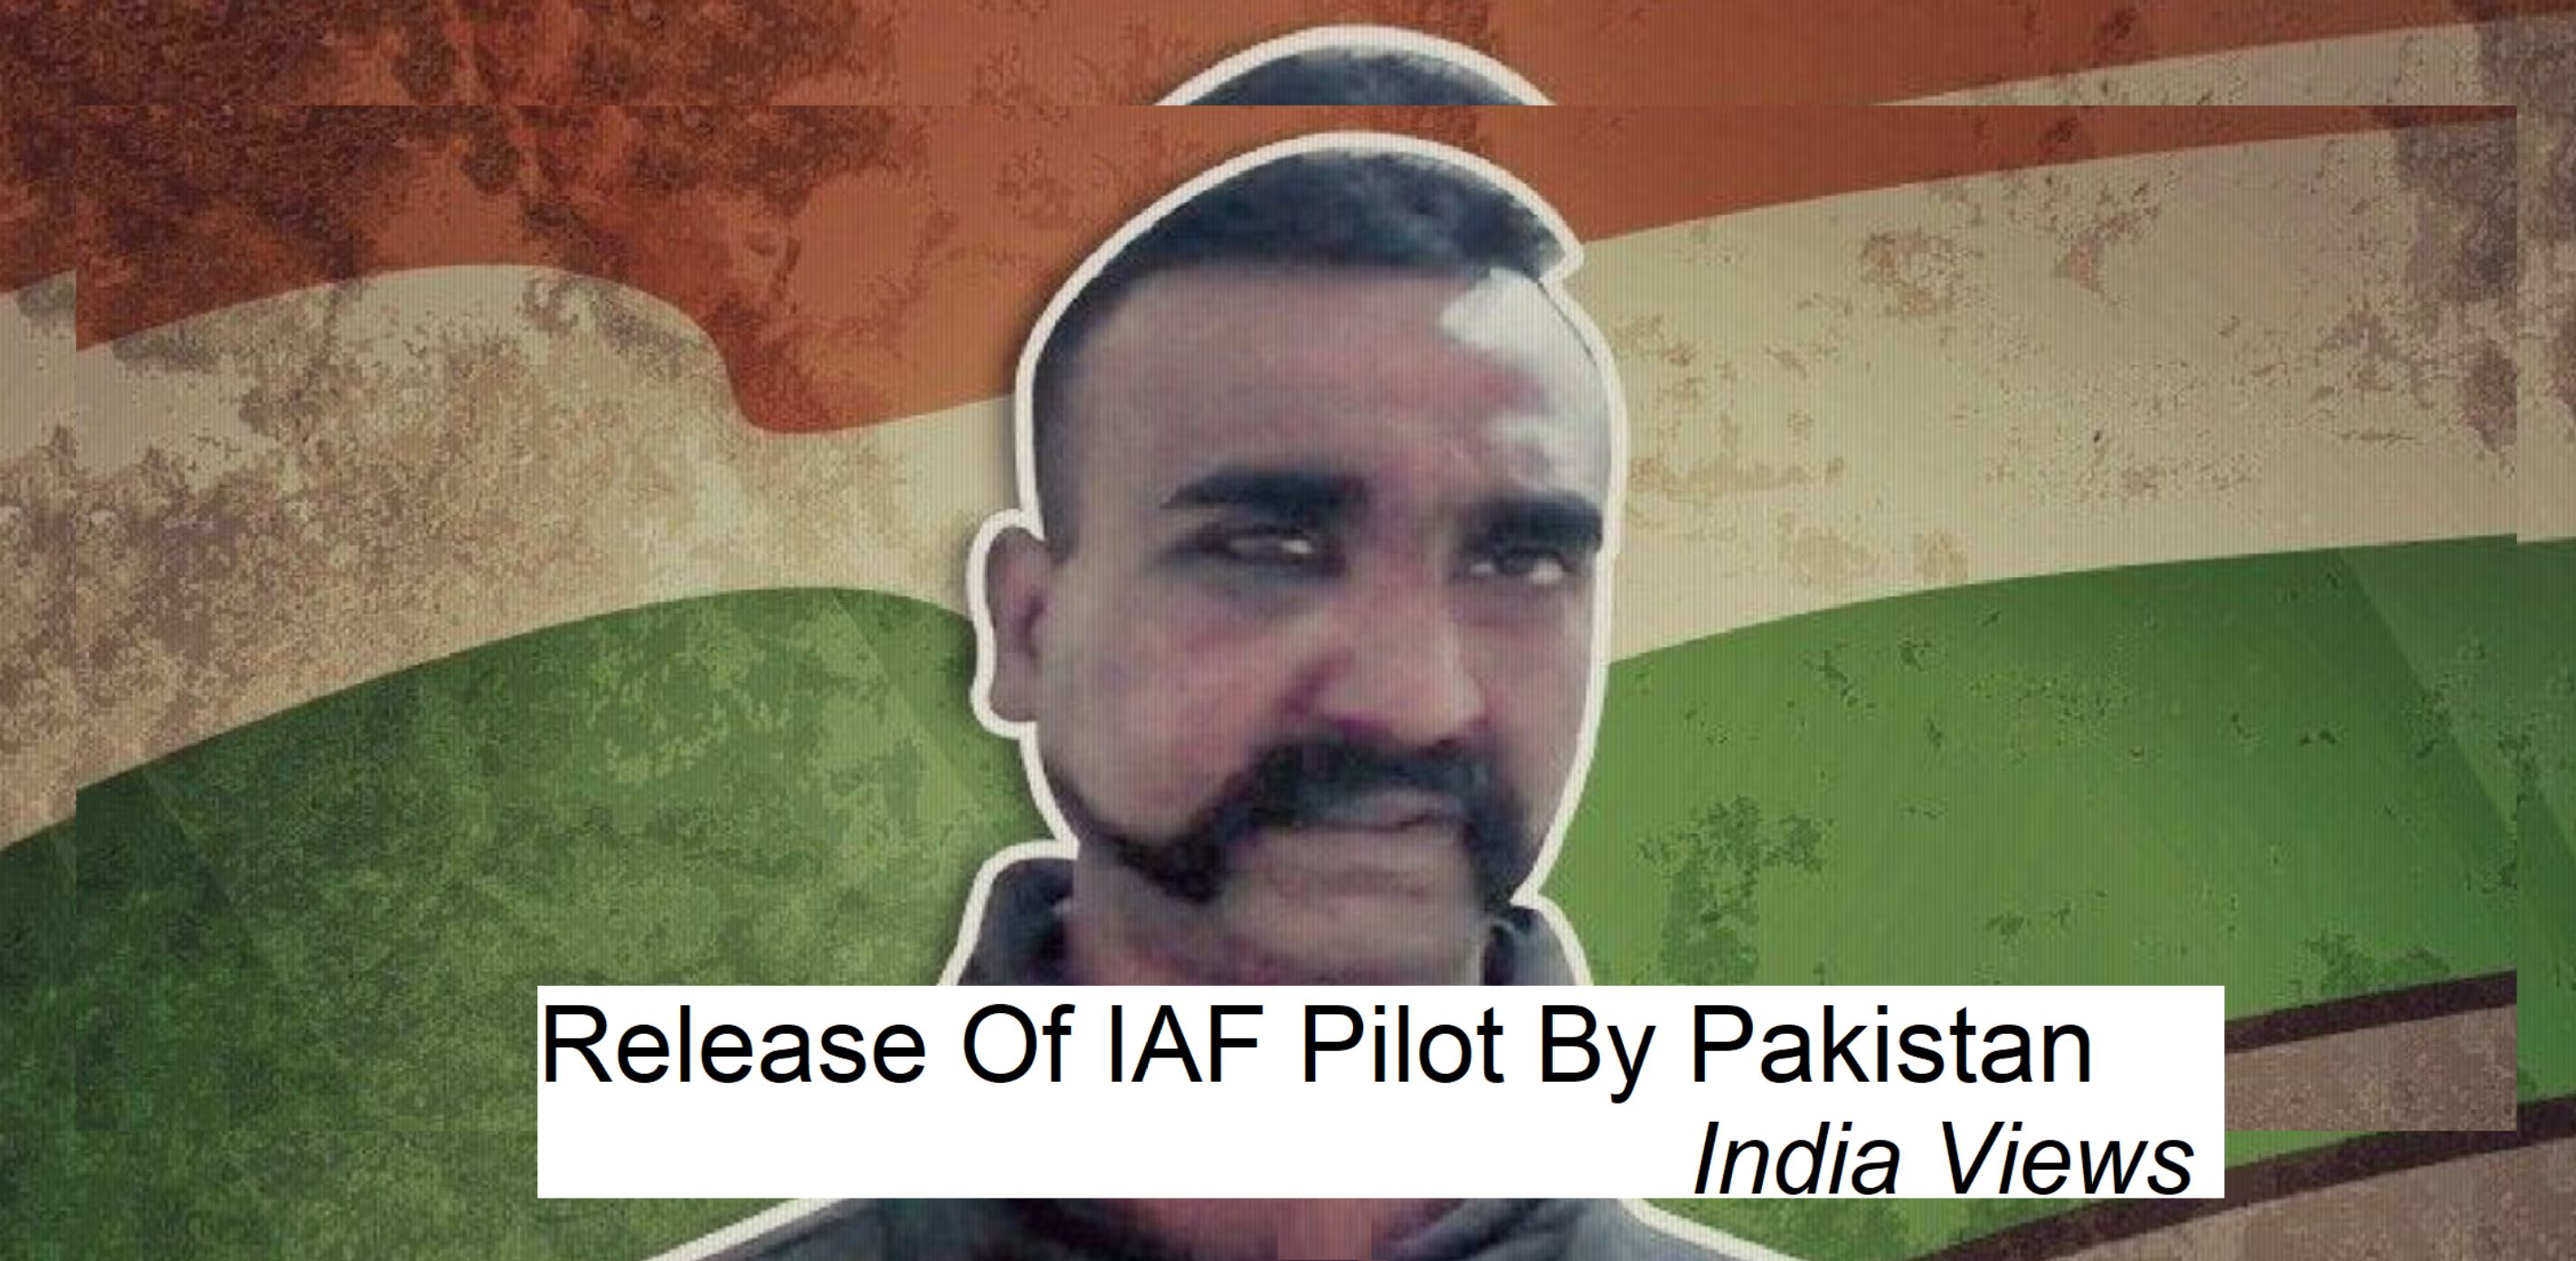 IAF Pilot Abhinandan